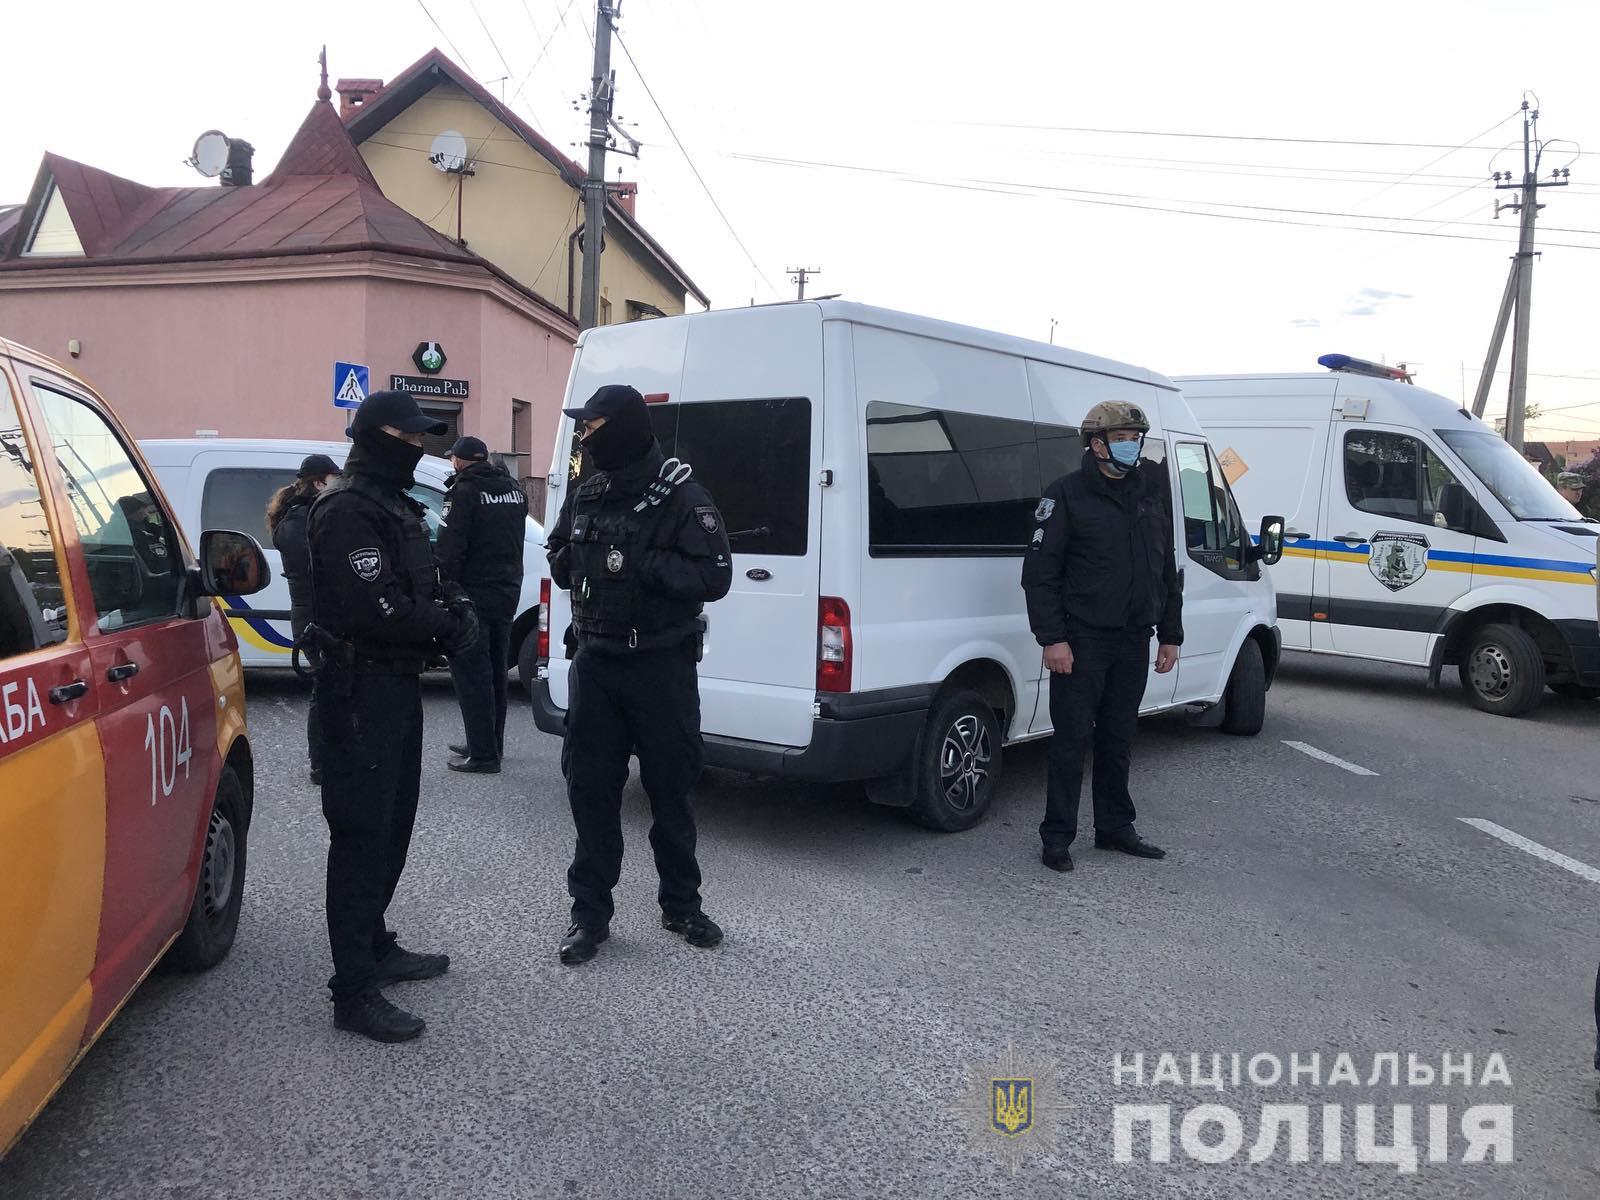 Во Львовской области мужчина угрожал взрывом в ресторане. Он задержан